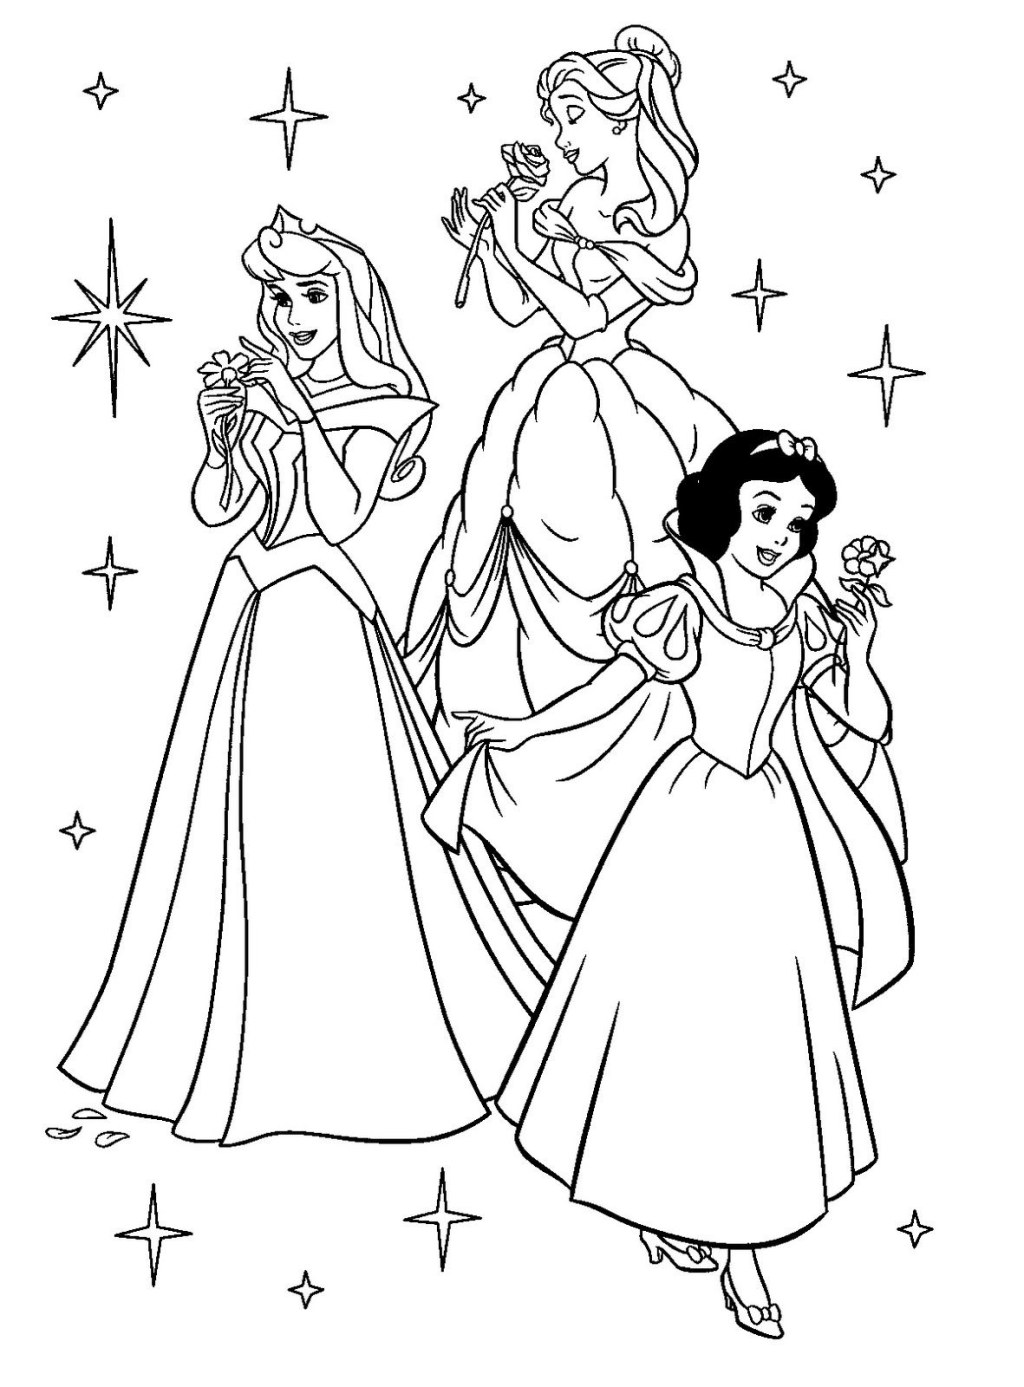 Picture of: dibujo de princesas para colorear  Cartoon coloring pages, Disney